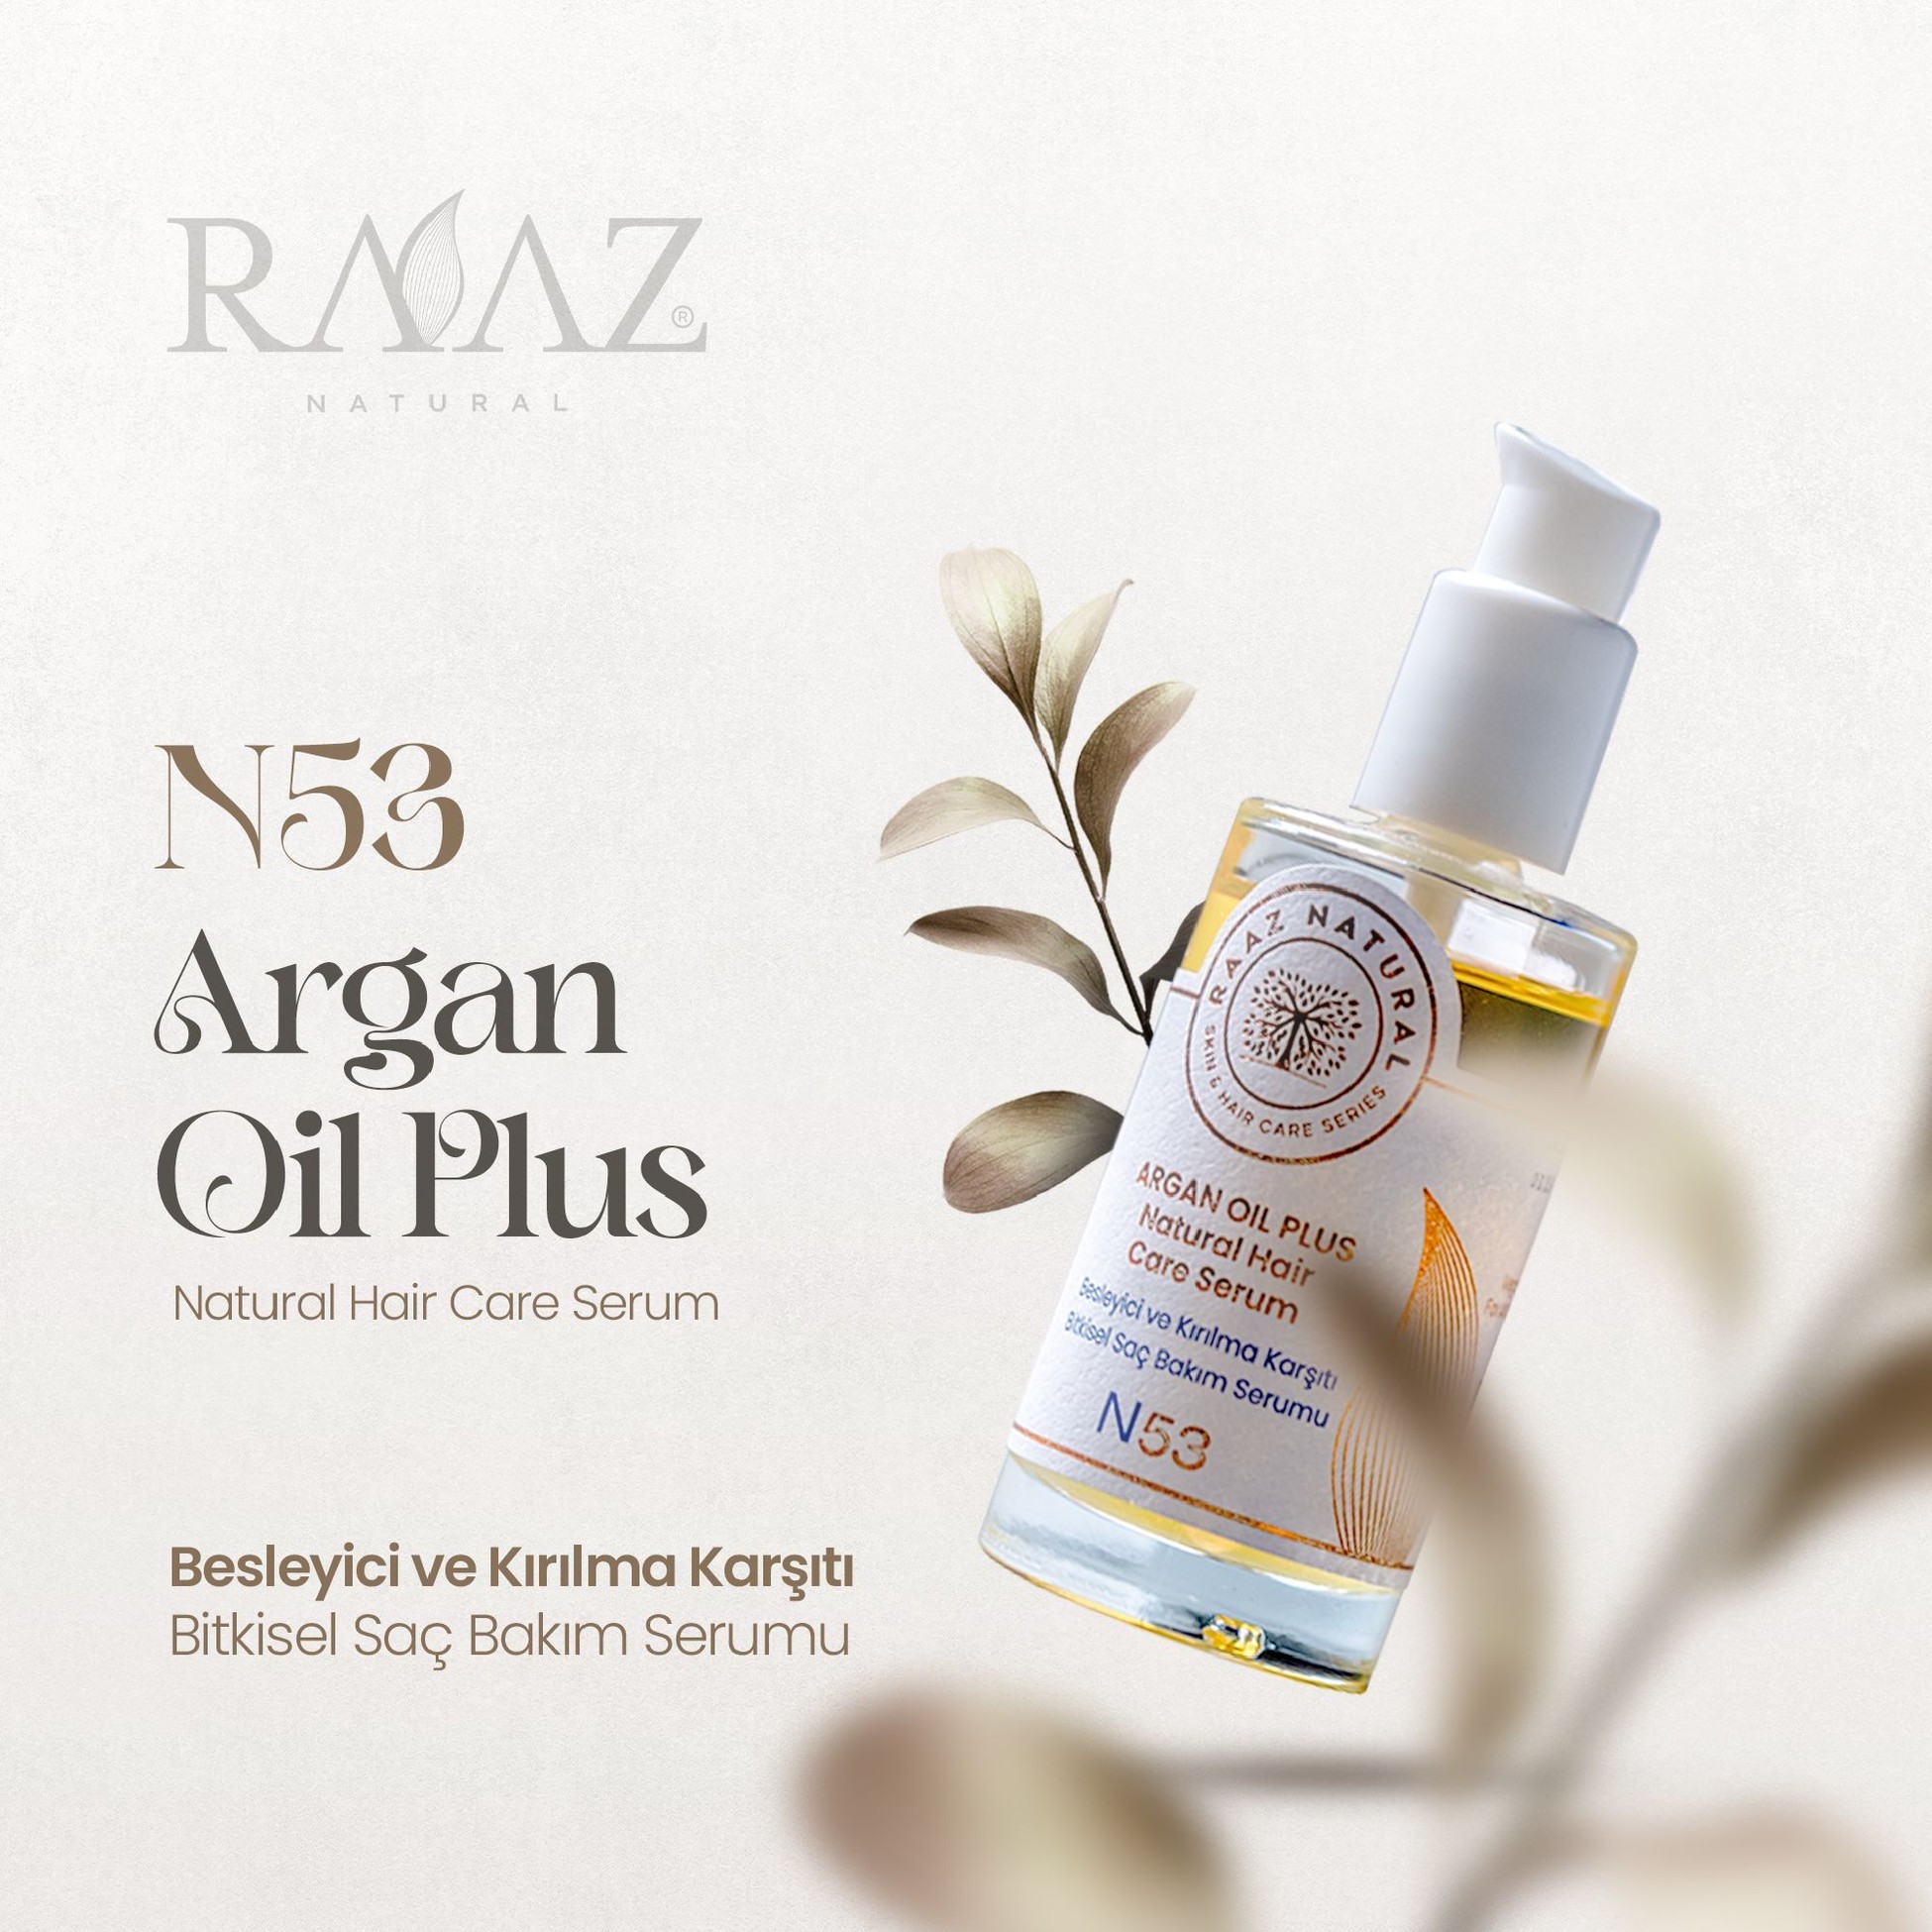 N53 ARGAN OIL PLUS Besleyici ve Kırılma Karşıtı Bitkisel Saç Bakım Serumu Natural Hair Care Serum